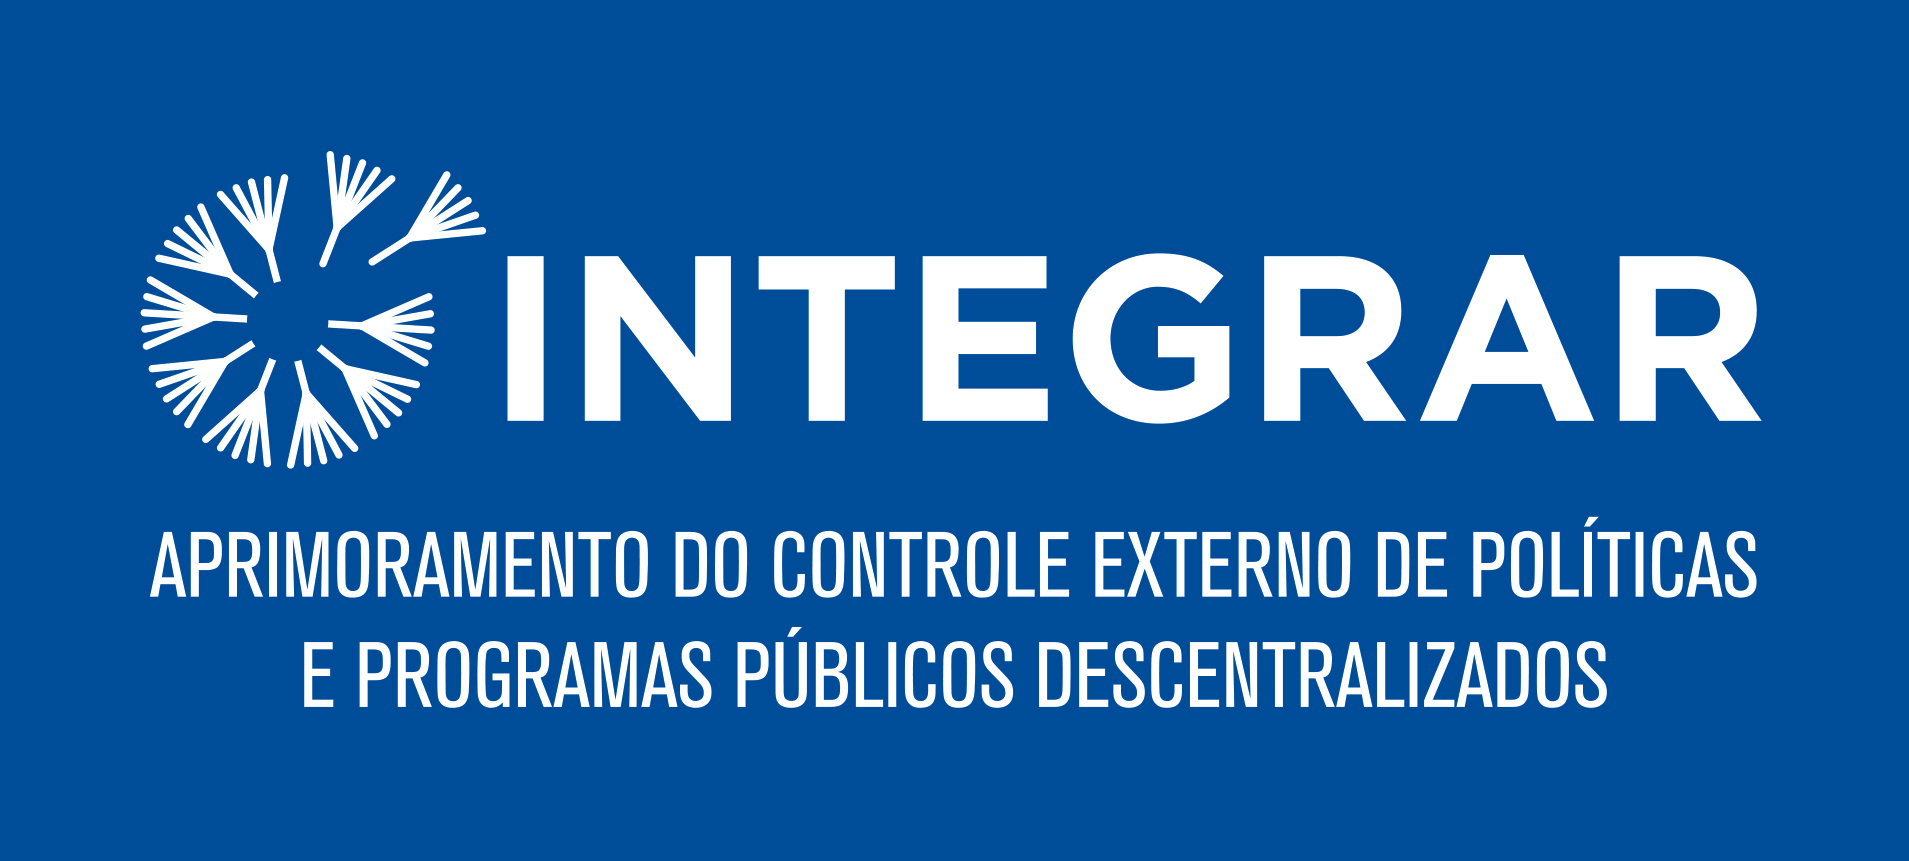 Logo Projeto Integrar.jpg